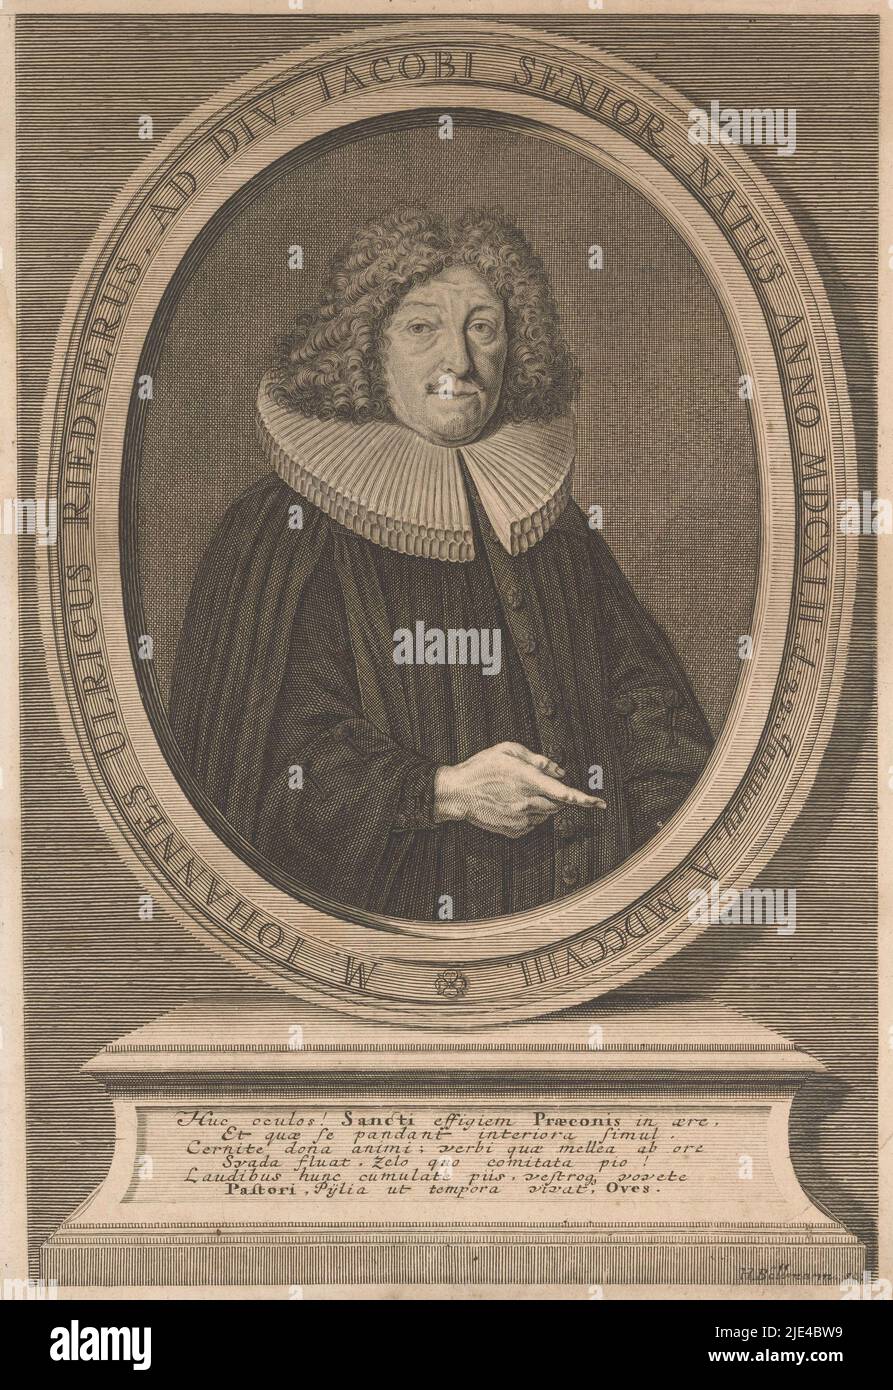 Portrait de Johann Ulrich Riedner, Hieronymus Böllmann, 1708, imprimerie: Hieronymus Böllmann, (mentionné sur l'objet), Neurenberg, 1708, papier, gravure, h 321 mm × l 225 mm Banque D'Images